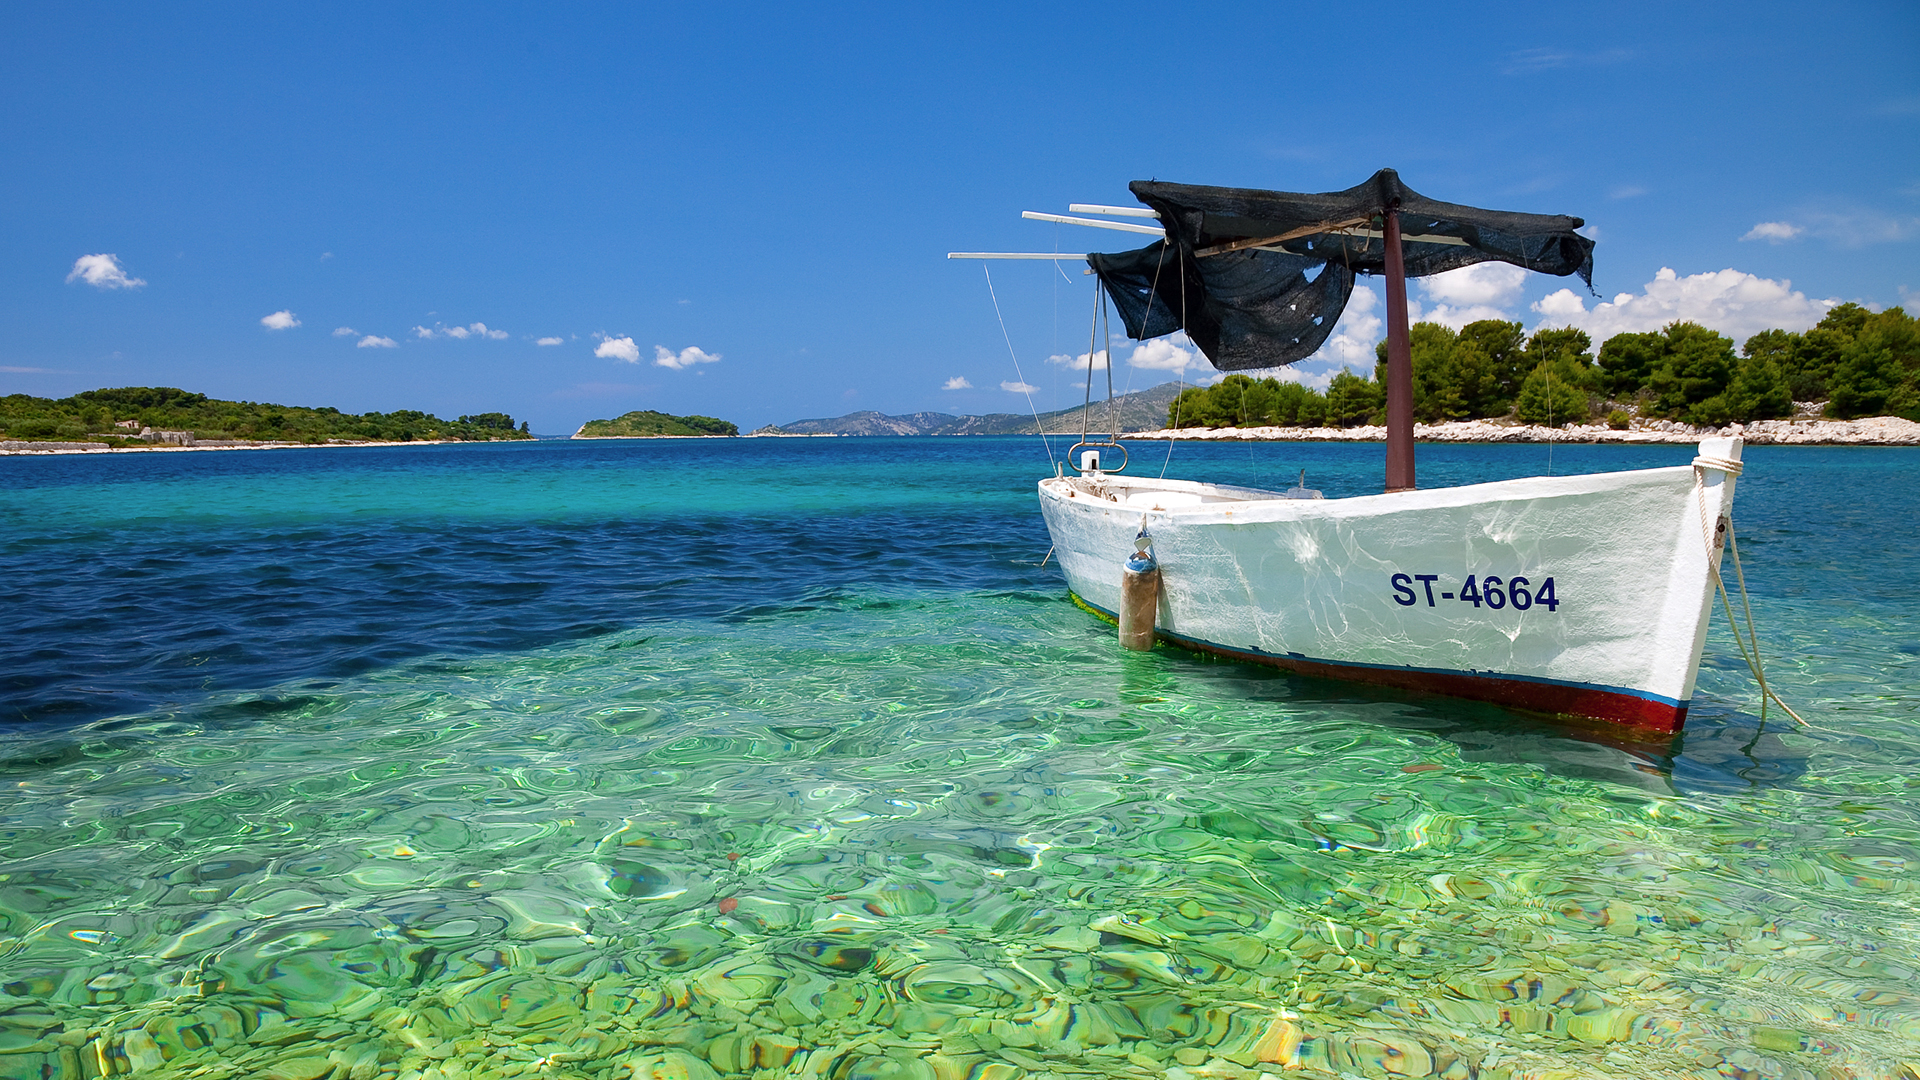 boats, Croatia, vehicles - desktop wallpaper